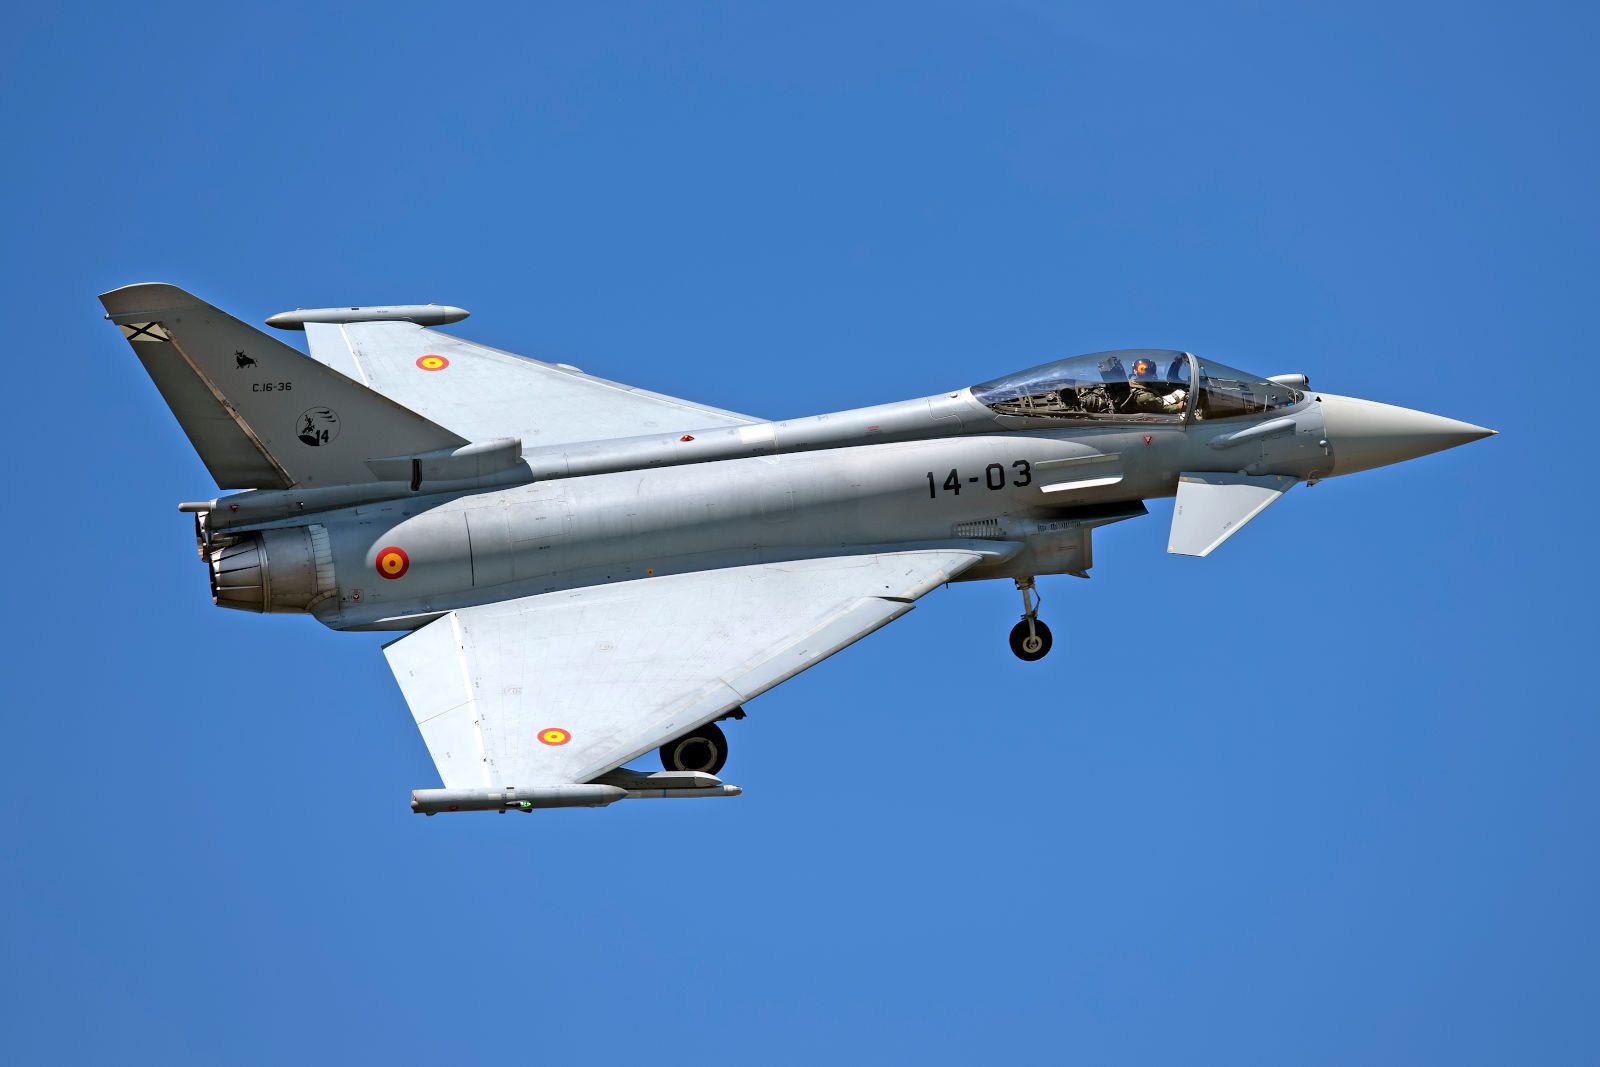 Τουρκία: Υπεροχή της Ελλάδας στο Αιγαίο με τα Rafale - Η Βρετανία μας στηρίζει για τα Eurofighter